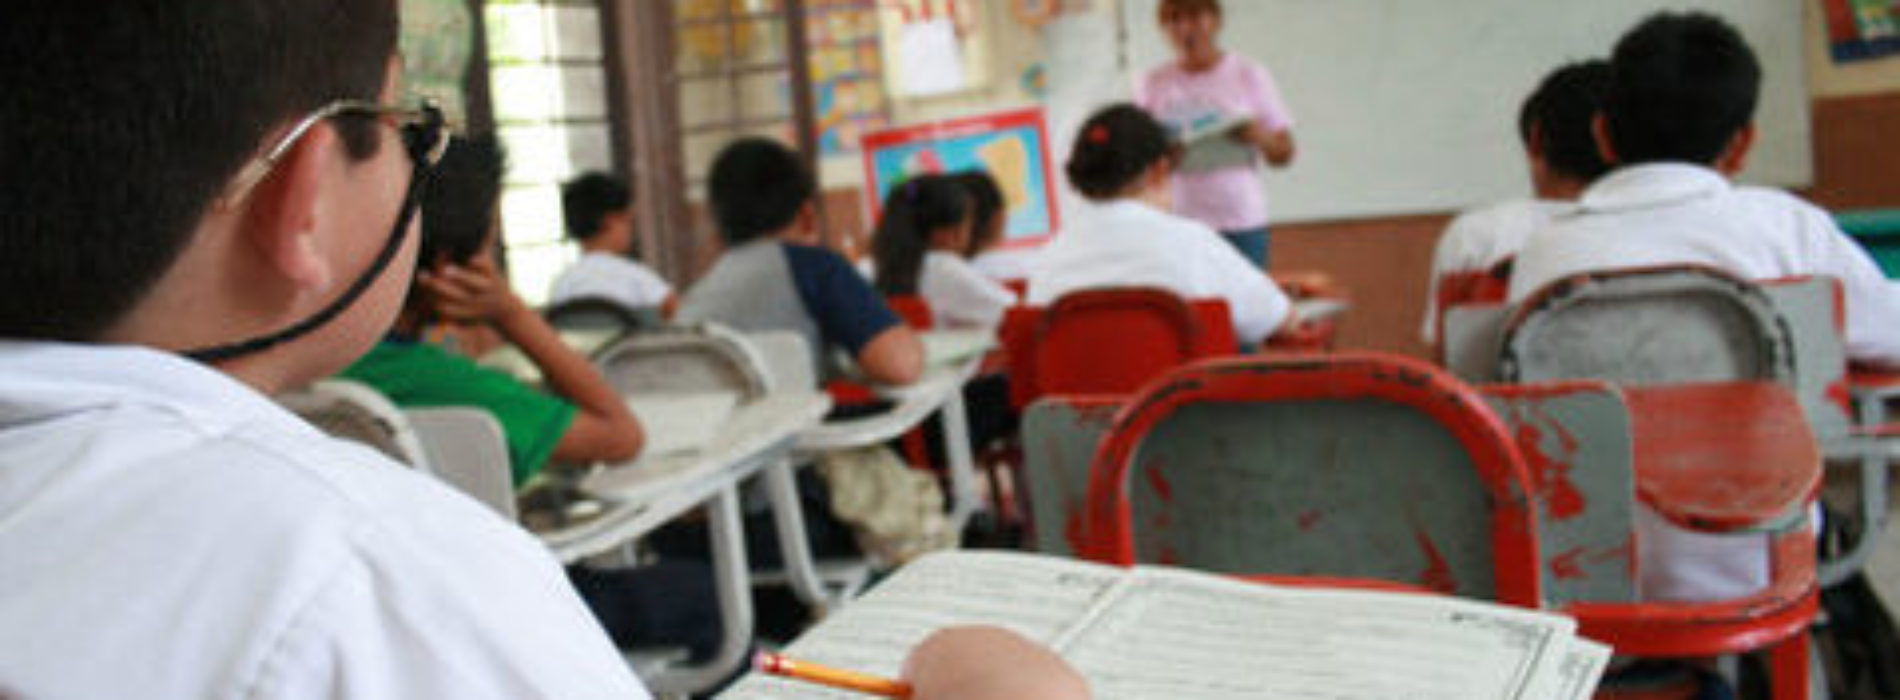 Peña envía al Senado iniciativa de calendario escolar flexible